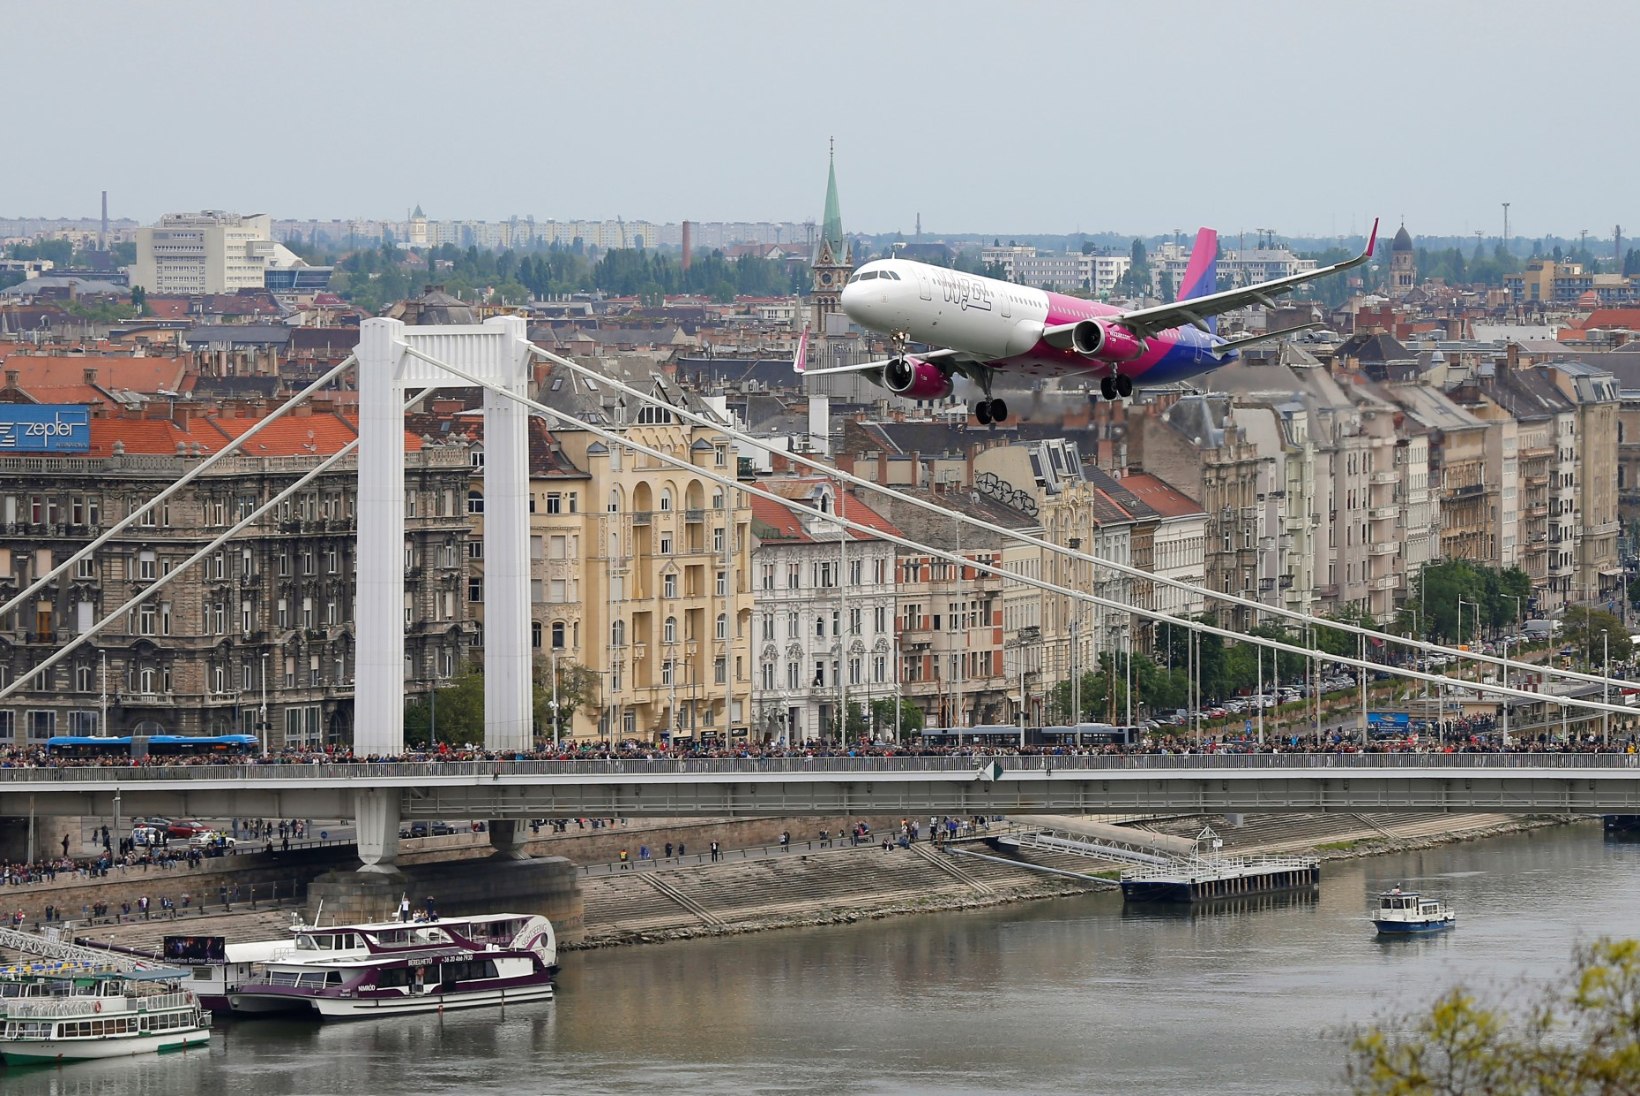 Ungari odavlennufirma Wizz Air avab liini Tallinnast Kiievi ja Londoni